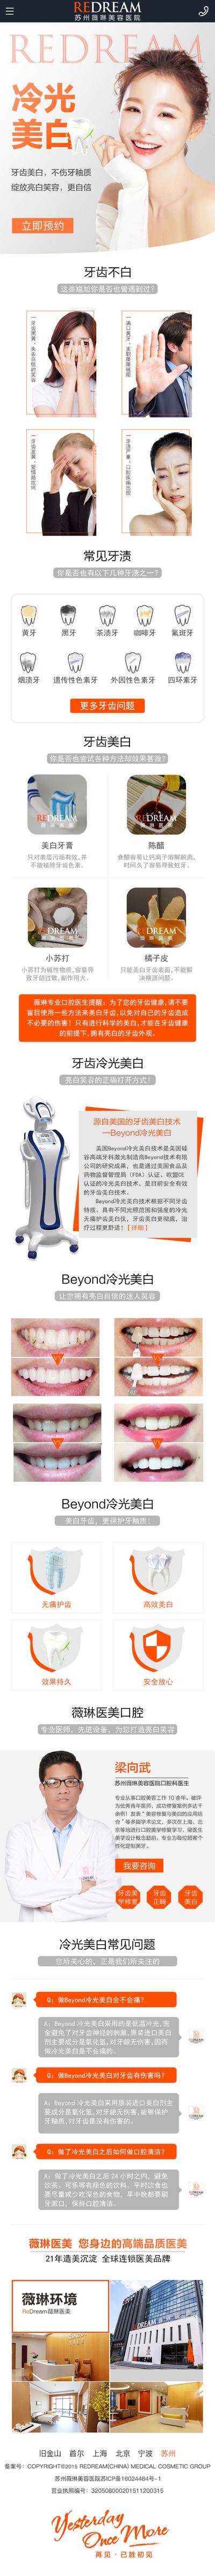 南门网 广告 海报 长图 牙科 专题 口腔